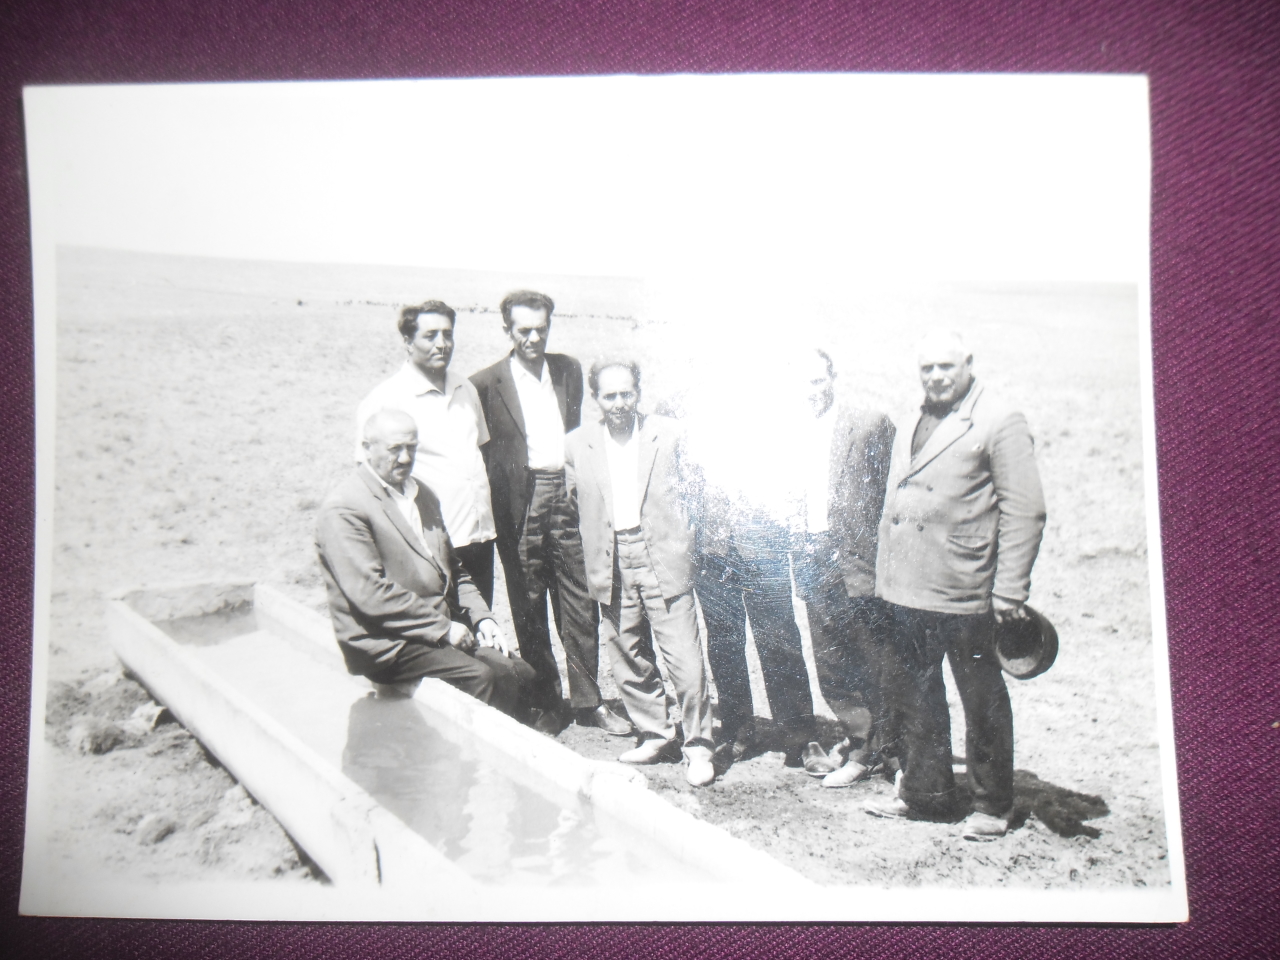 Թադևոս Նիկոլայի Նալբանդյանը (ԽՍՀՄ և ՀԽՍՀ ժուռնալիստների միության անդամ, լրագրող) ընկերների հետ